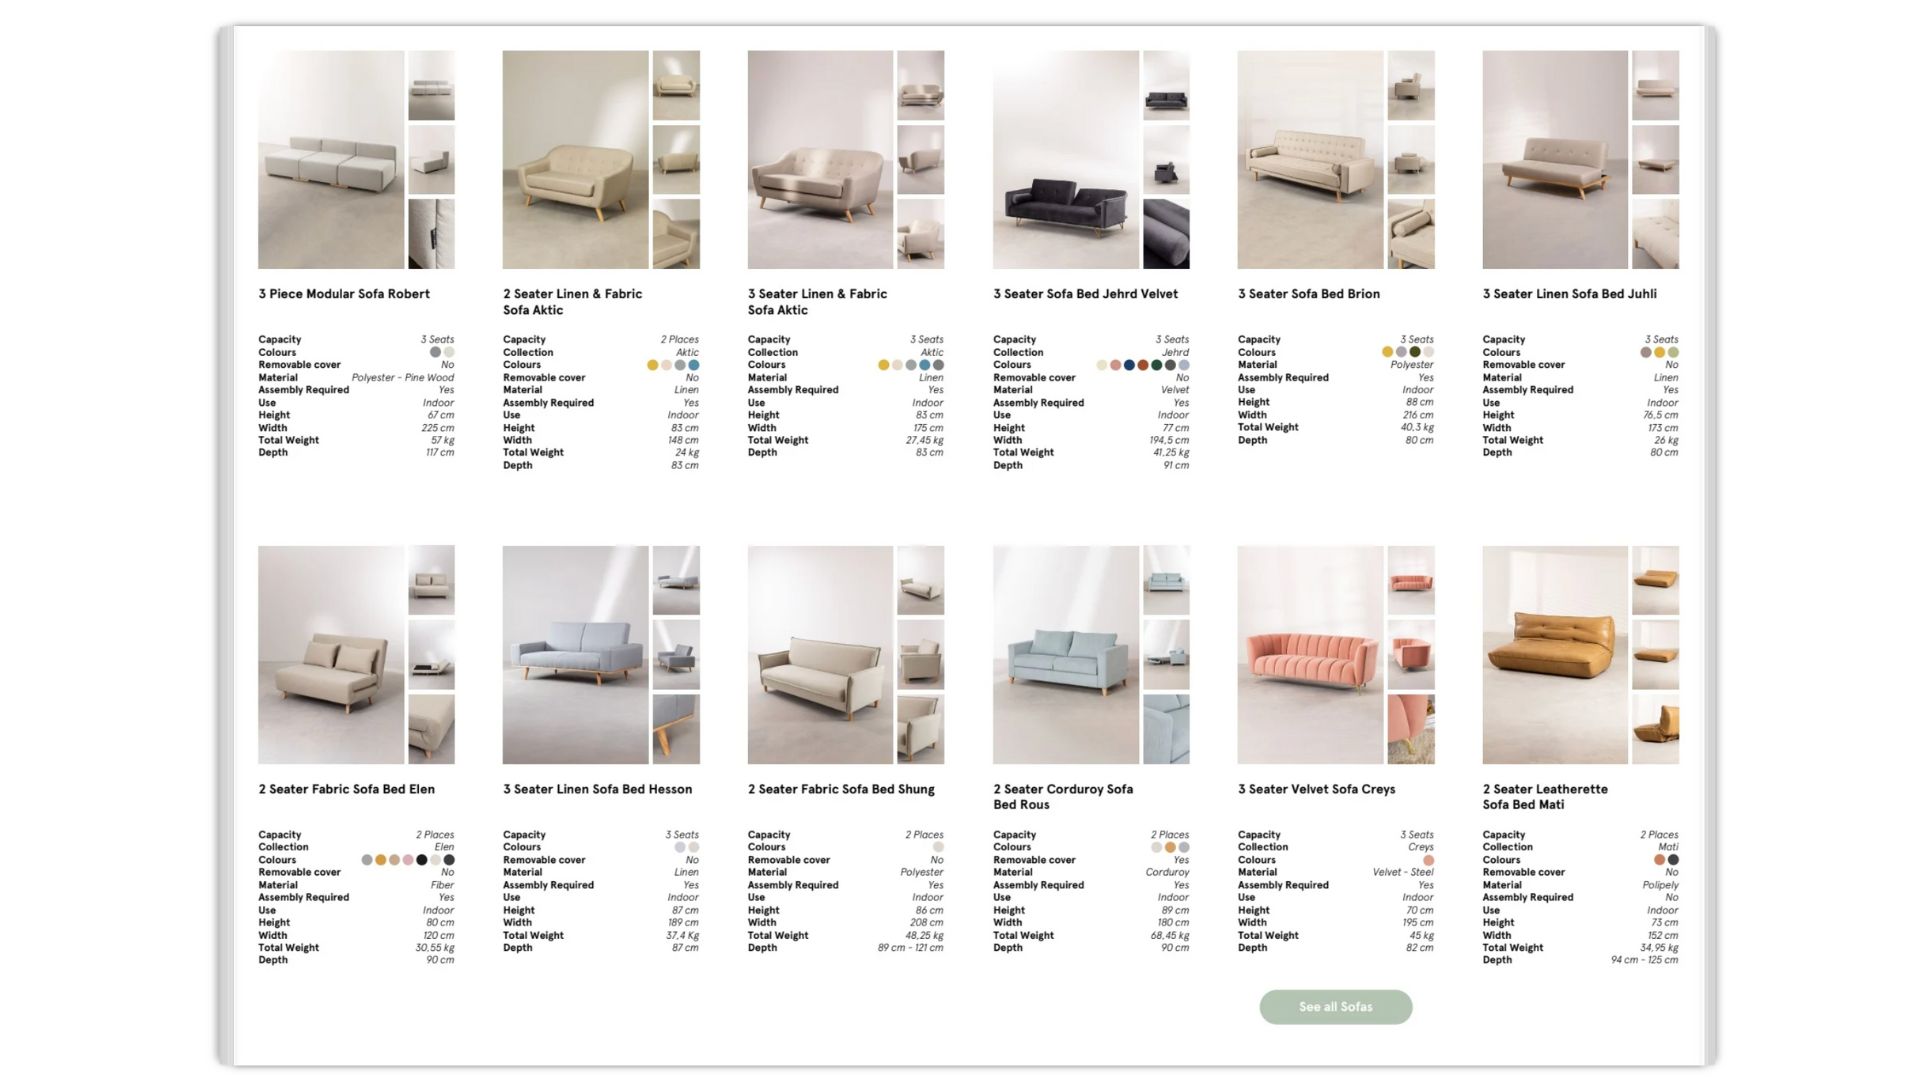 Diverse Furniture Lifestyles in Sklum’s CGI Catalog